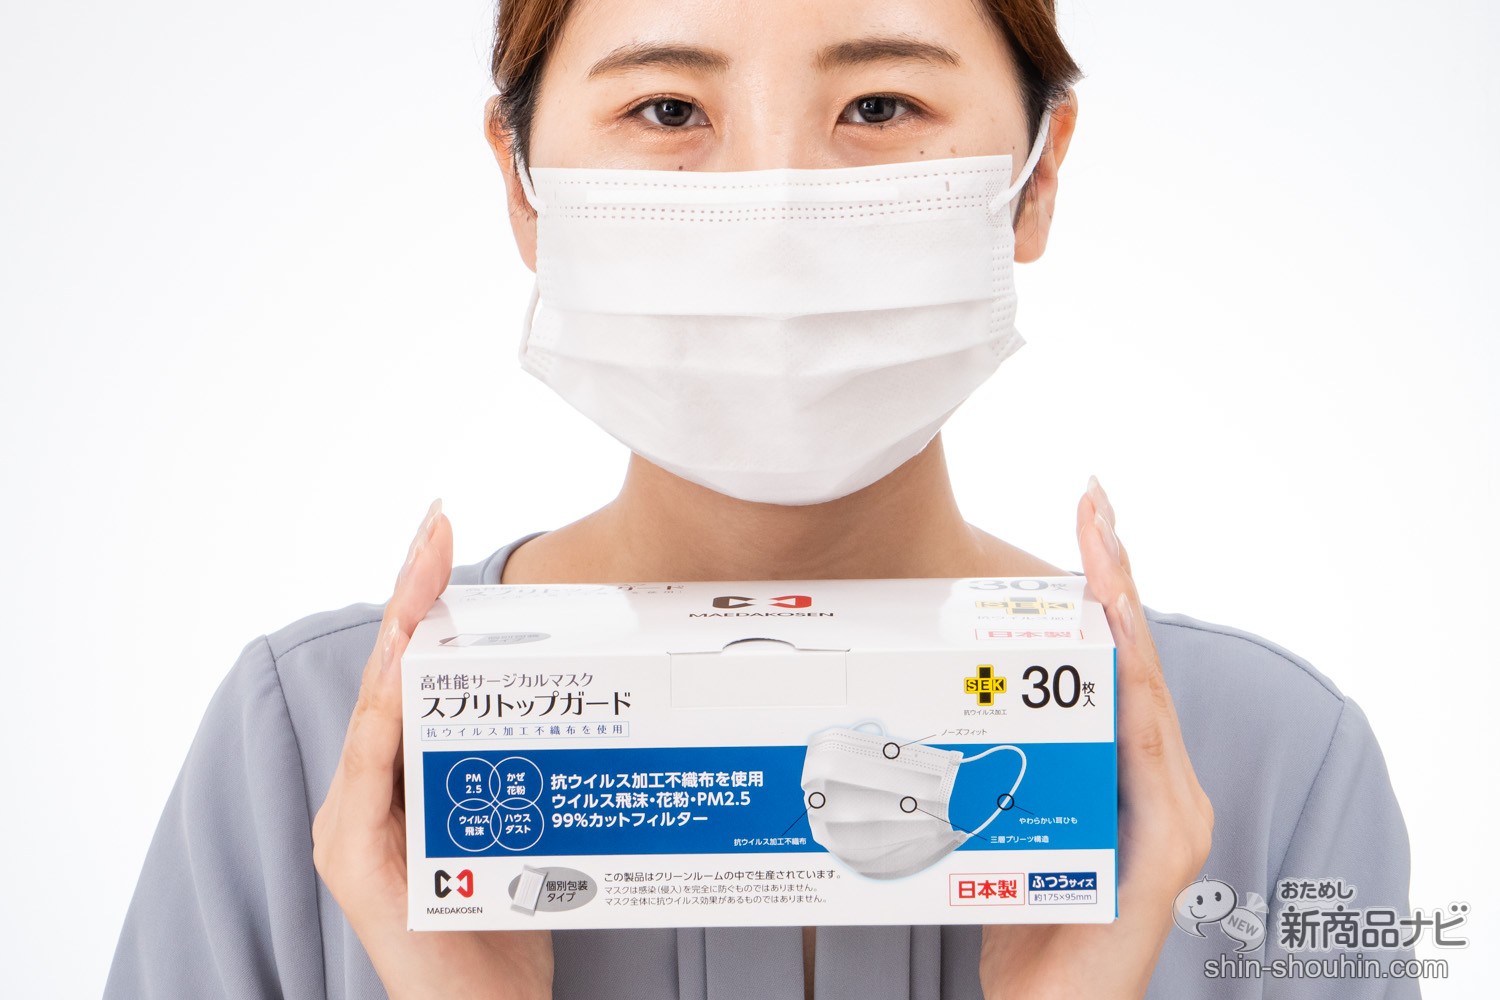 おためし新商品ナビ » Blog Archive » 抗ウイルス加工不織布使用の高性能マスクがお手頃価格に！ 日本の不織布メーカーが作る安心の『 スプリトップガード』を徹底レビュー！